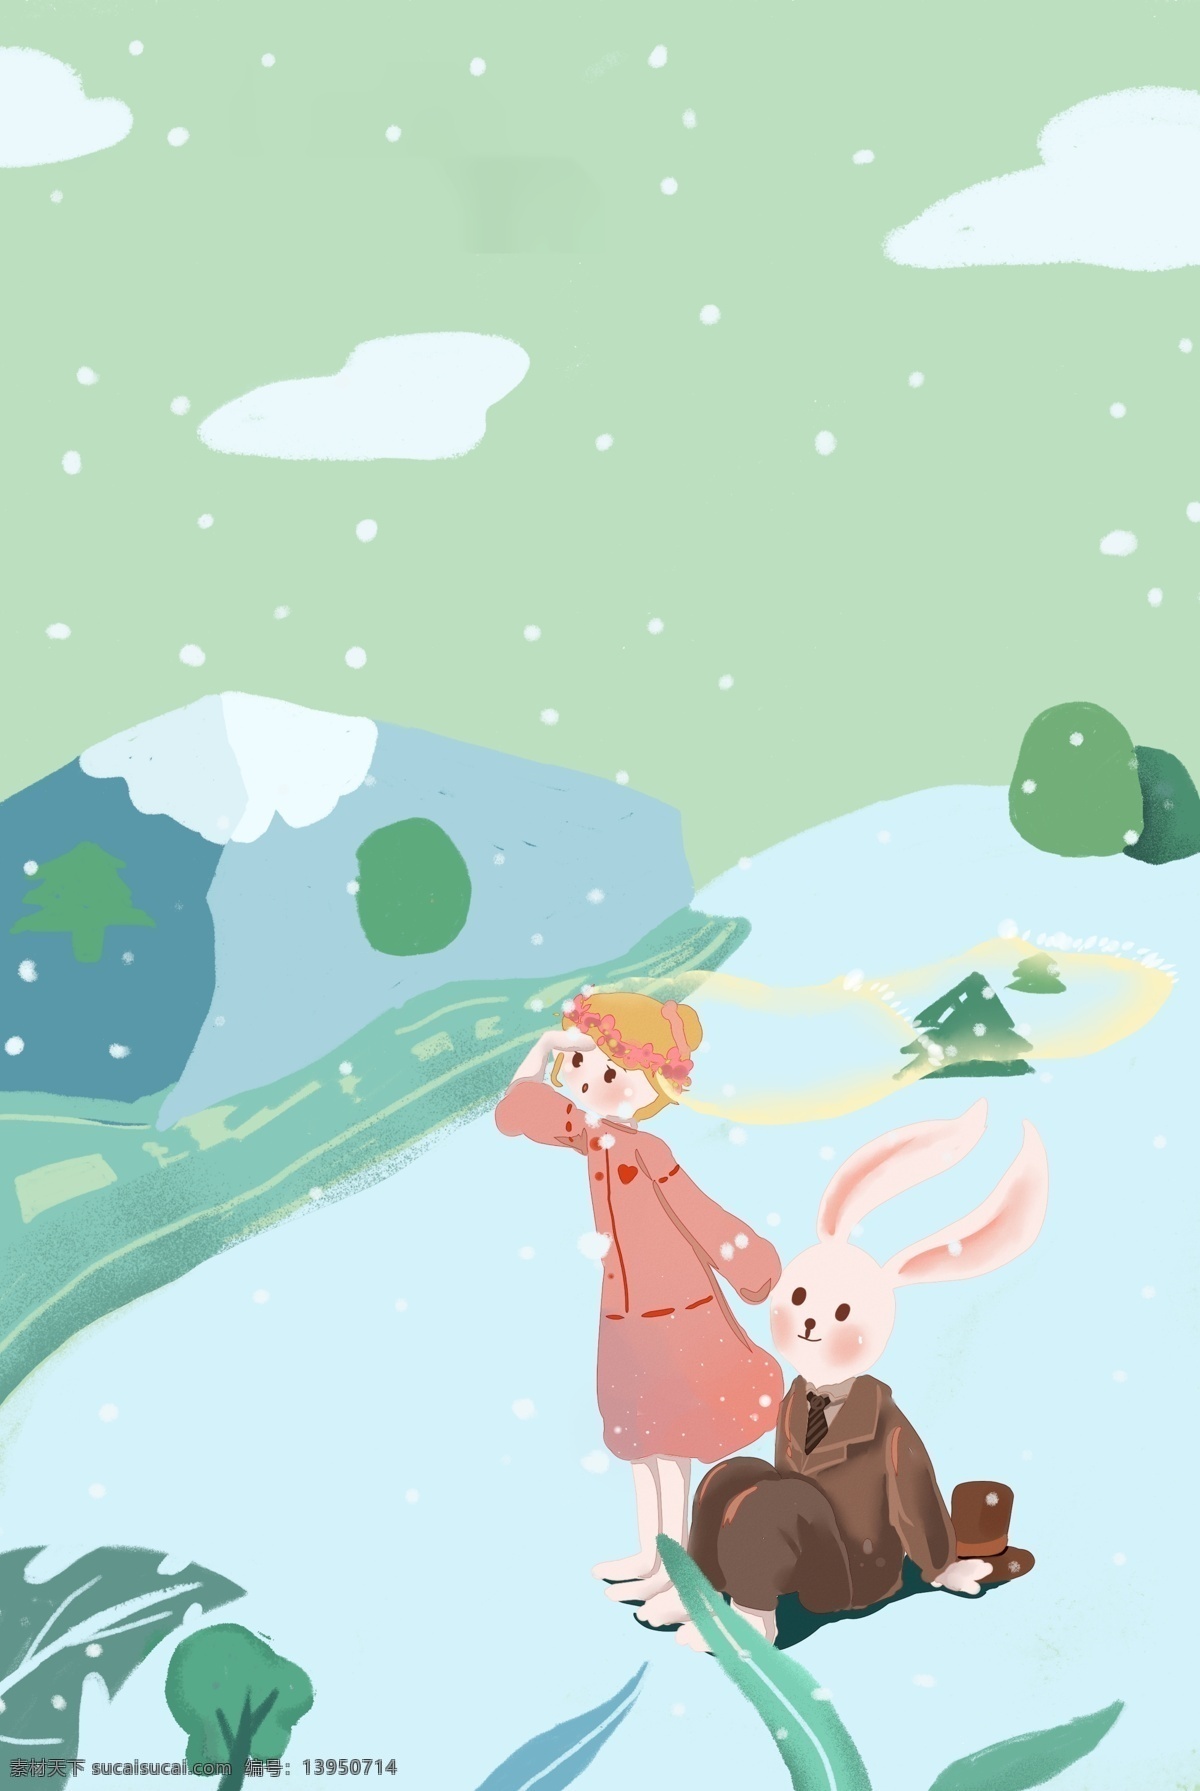 冬日 山坡 看 风景 浪漫 兔子 情侣 冬天 雪景 出行 旅游 插画风 促销海报